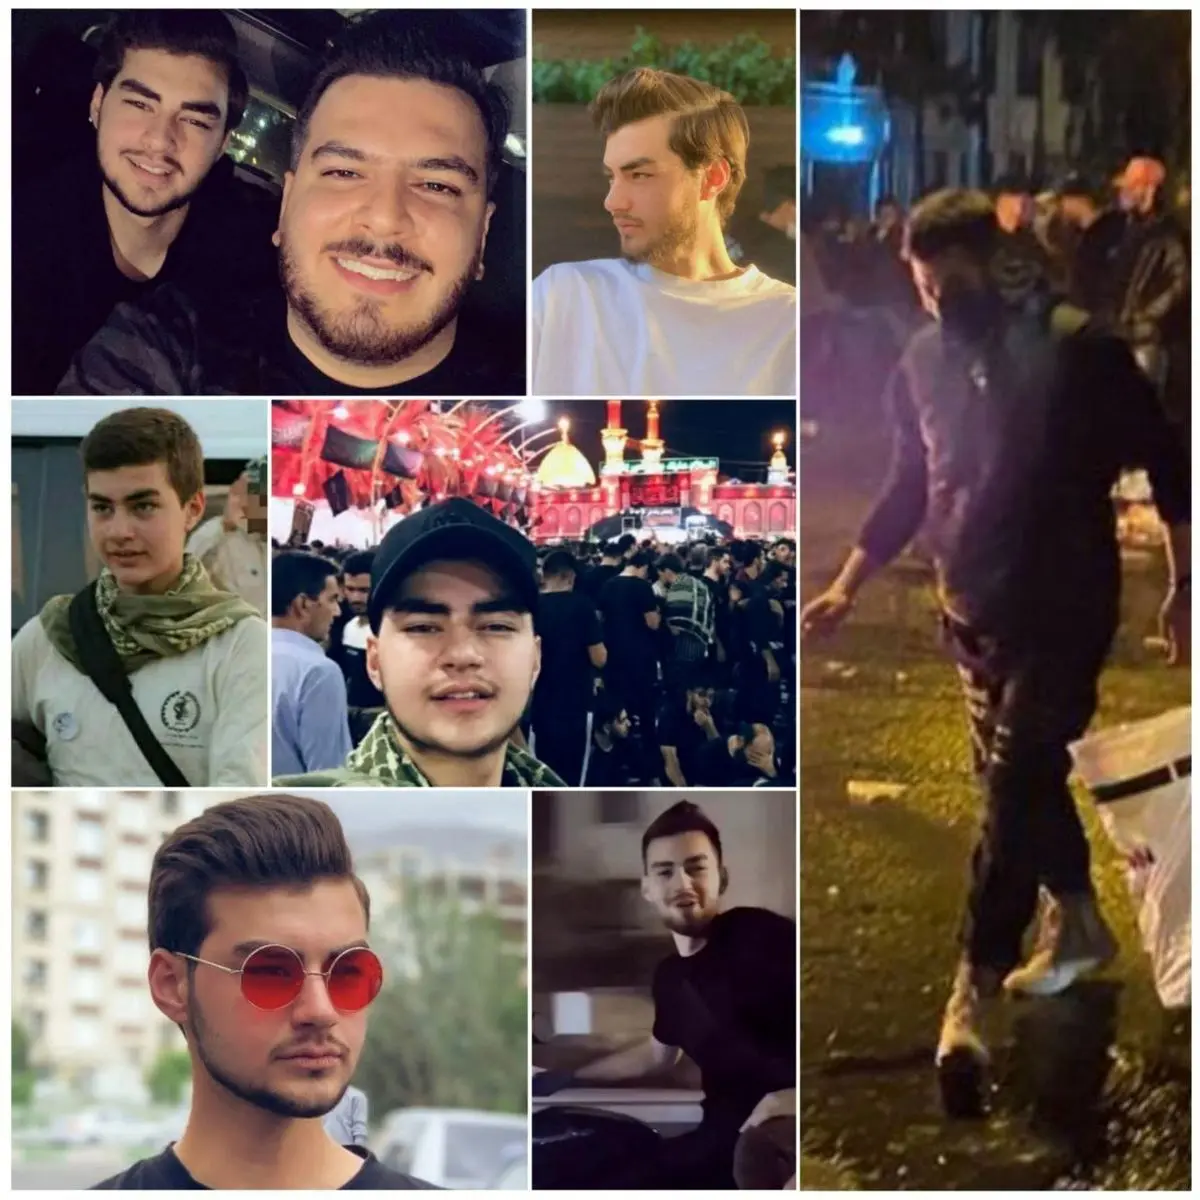 حمیدرضا روحی عضو بسیج بوده؛ اما در اعتراضات خیابانی شرکت کرده / نیروهای بسیج جنازه حمیدرضا روحی را آزاد کردند